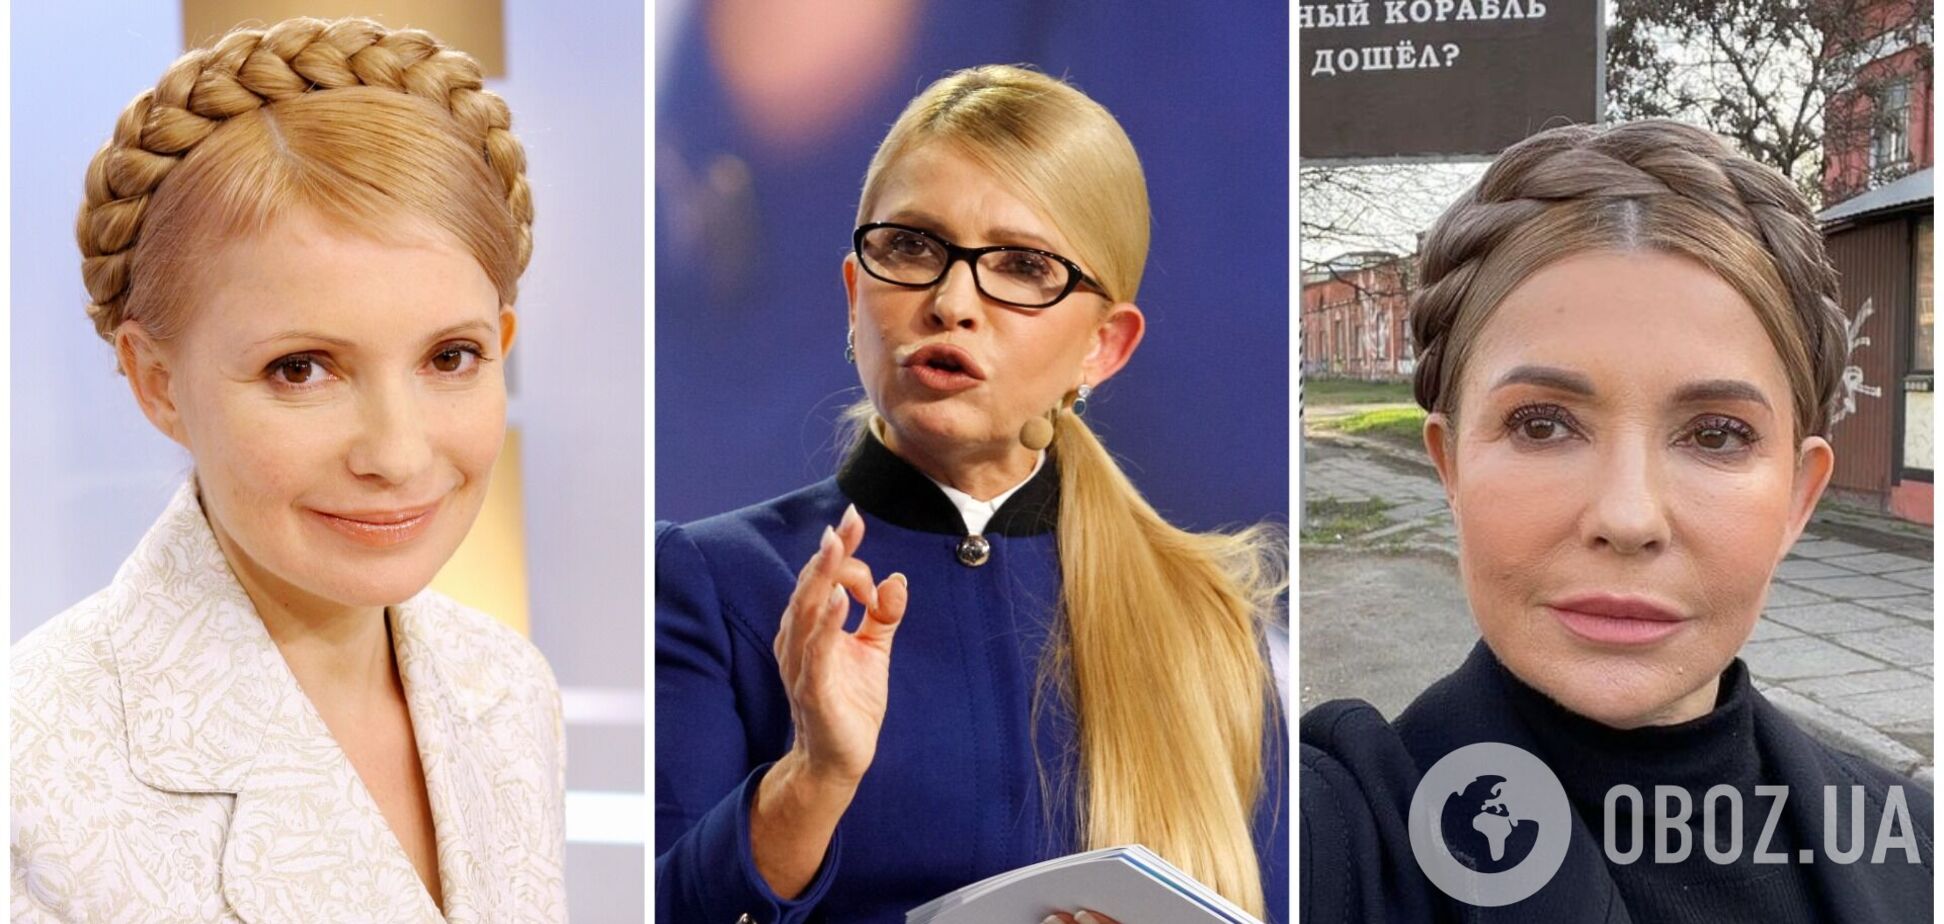 Тимошенко повернула фірмову зачіску та кардинально змінила імідж. Фото